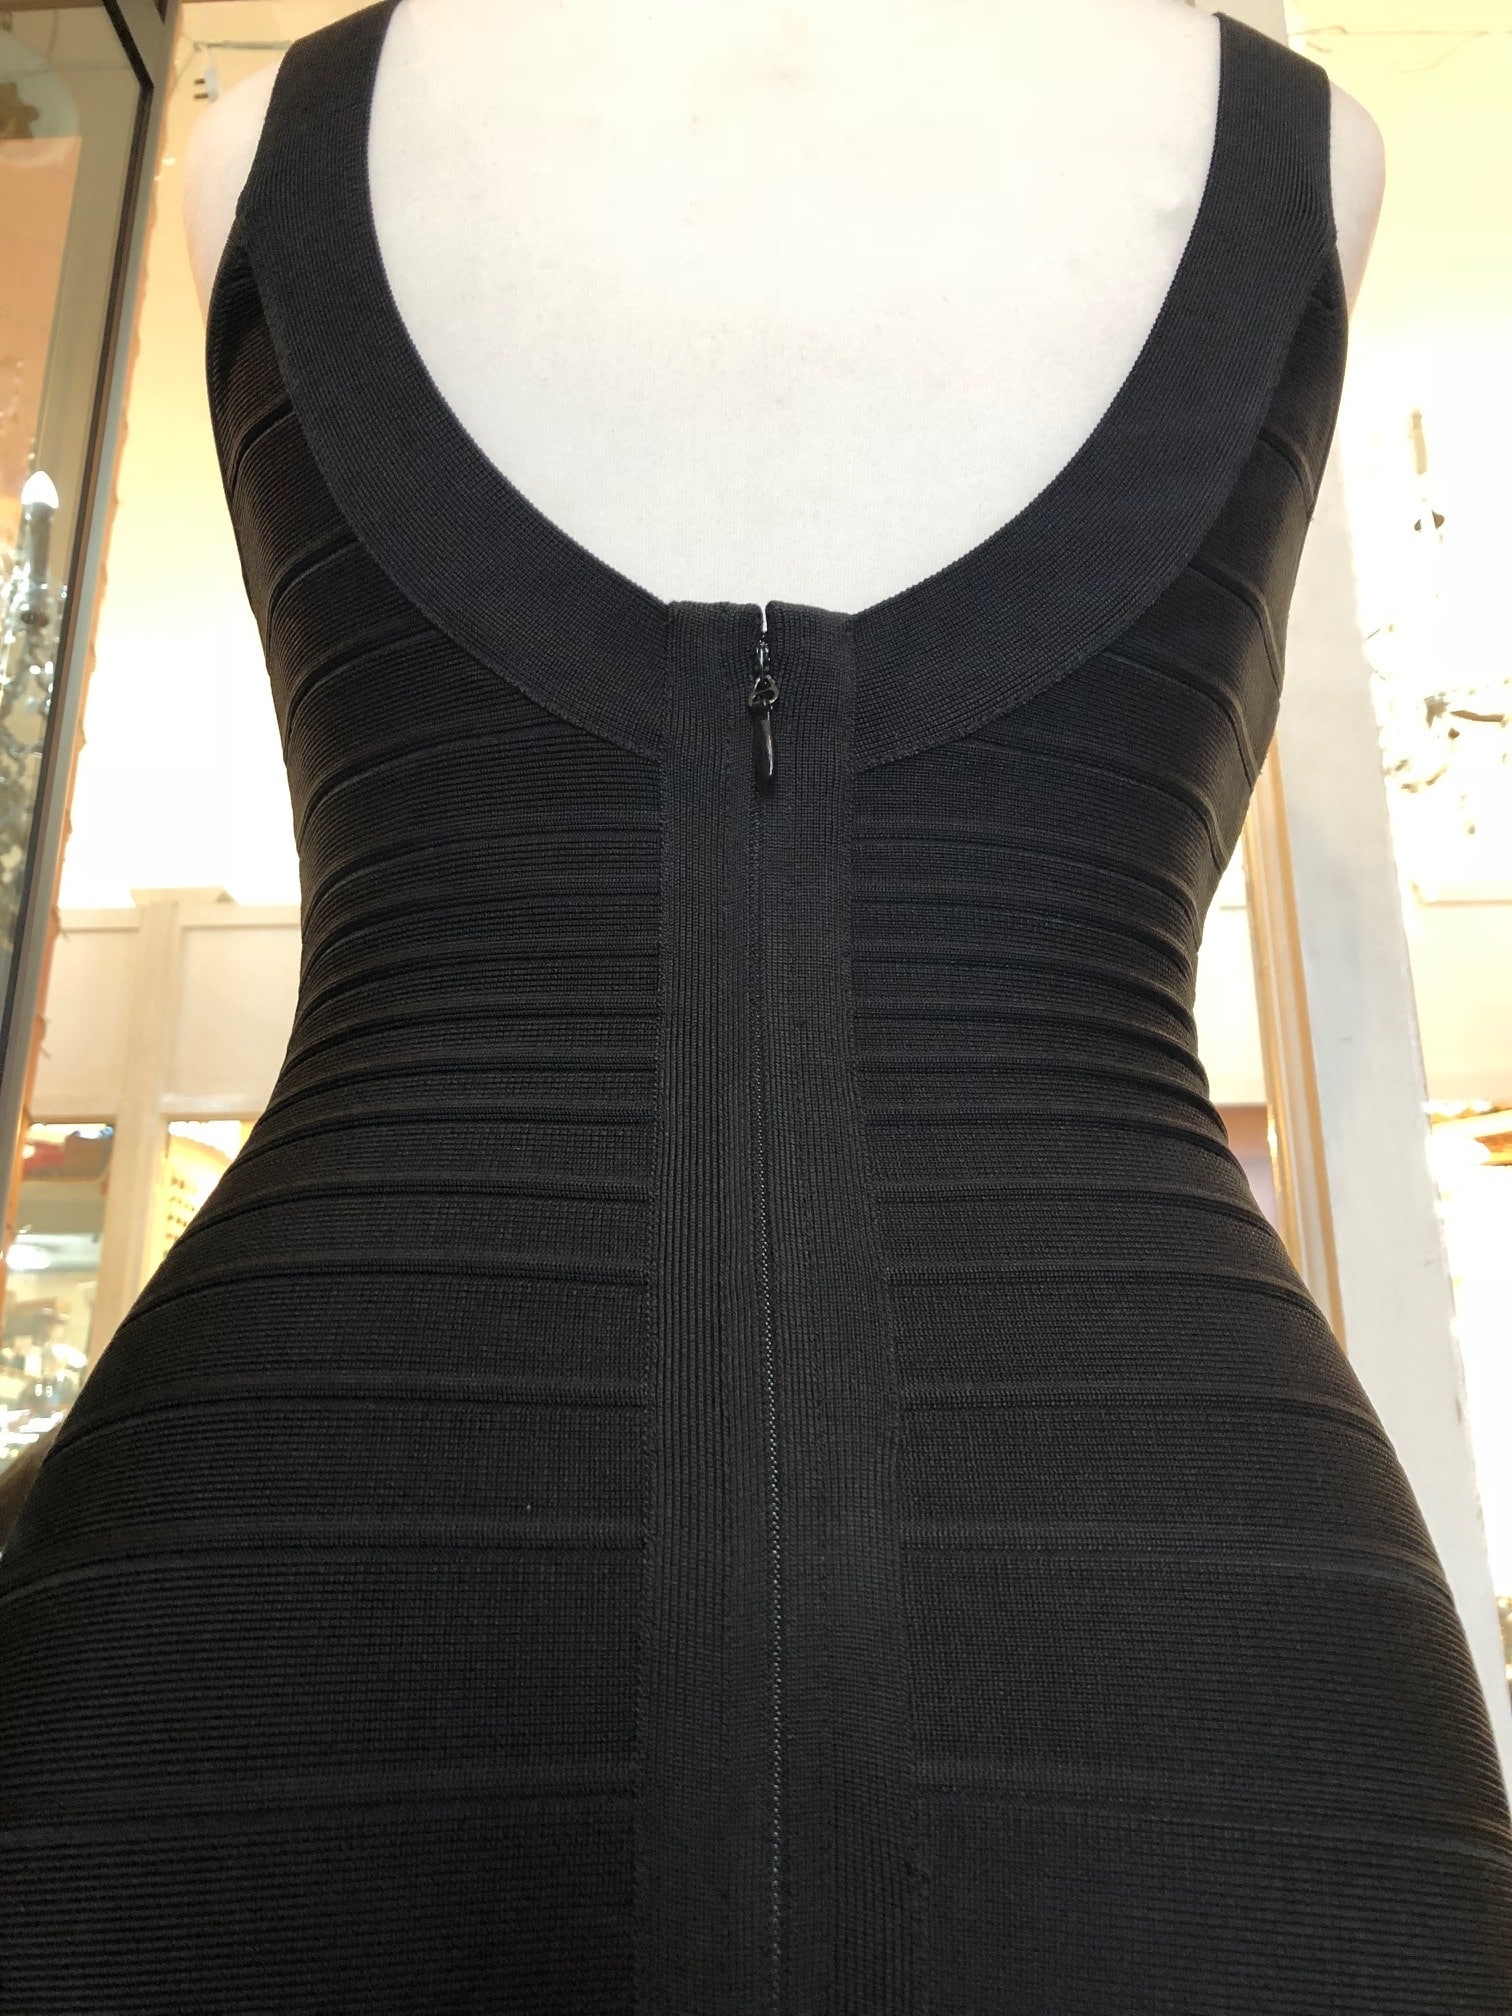 HERVE LEGER Sydney Bandage Black Dress